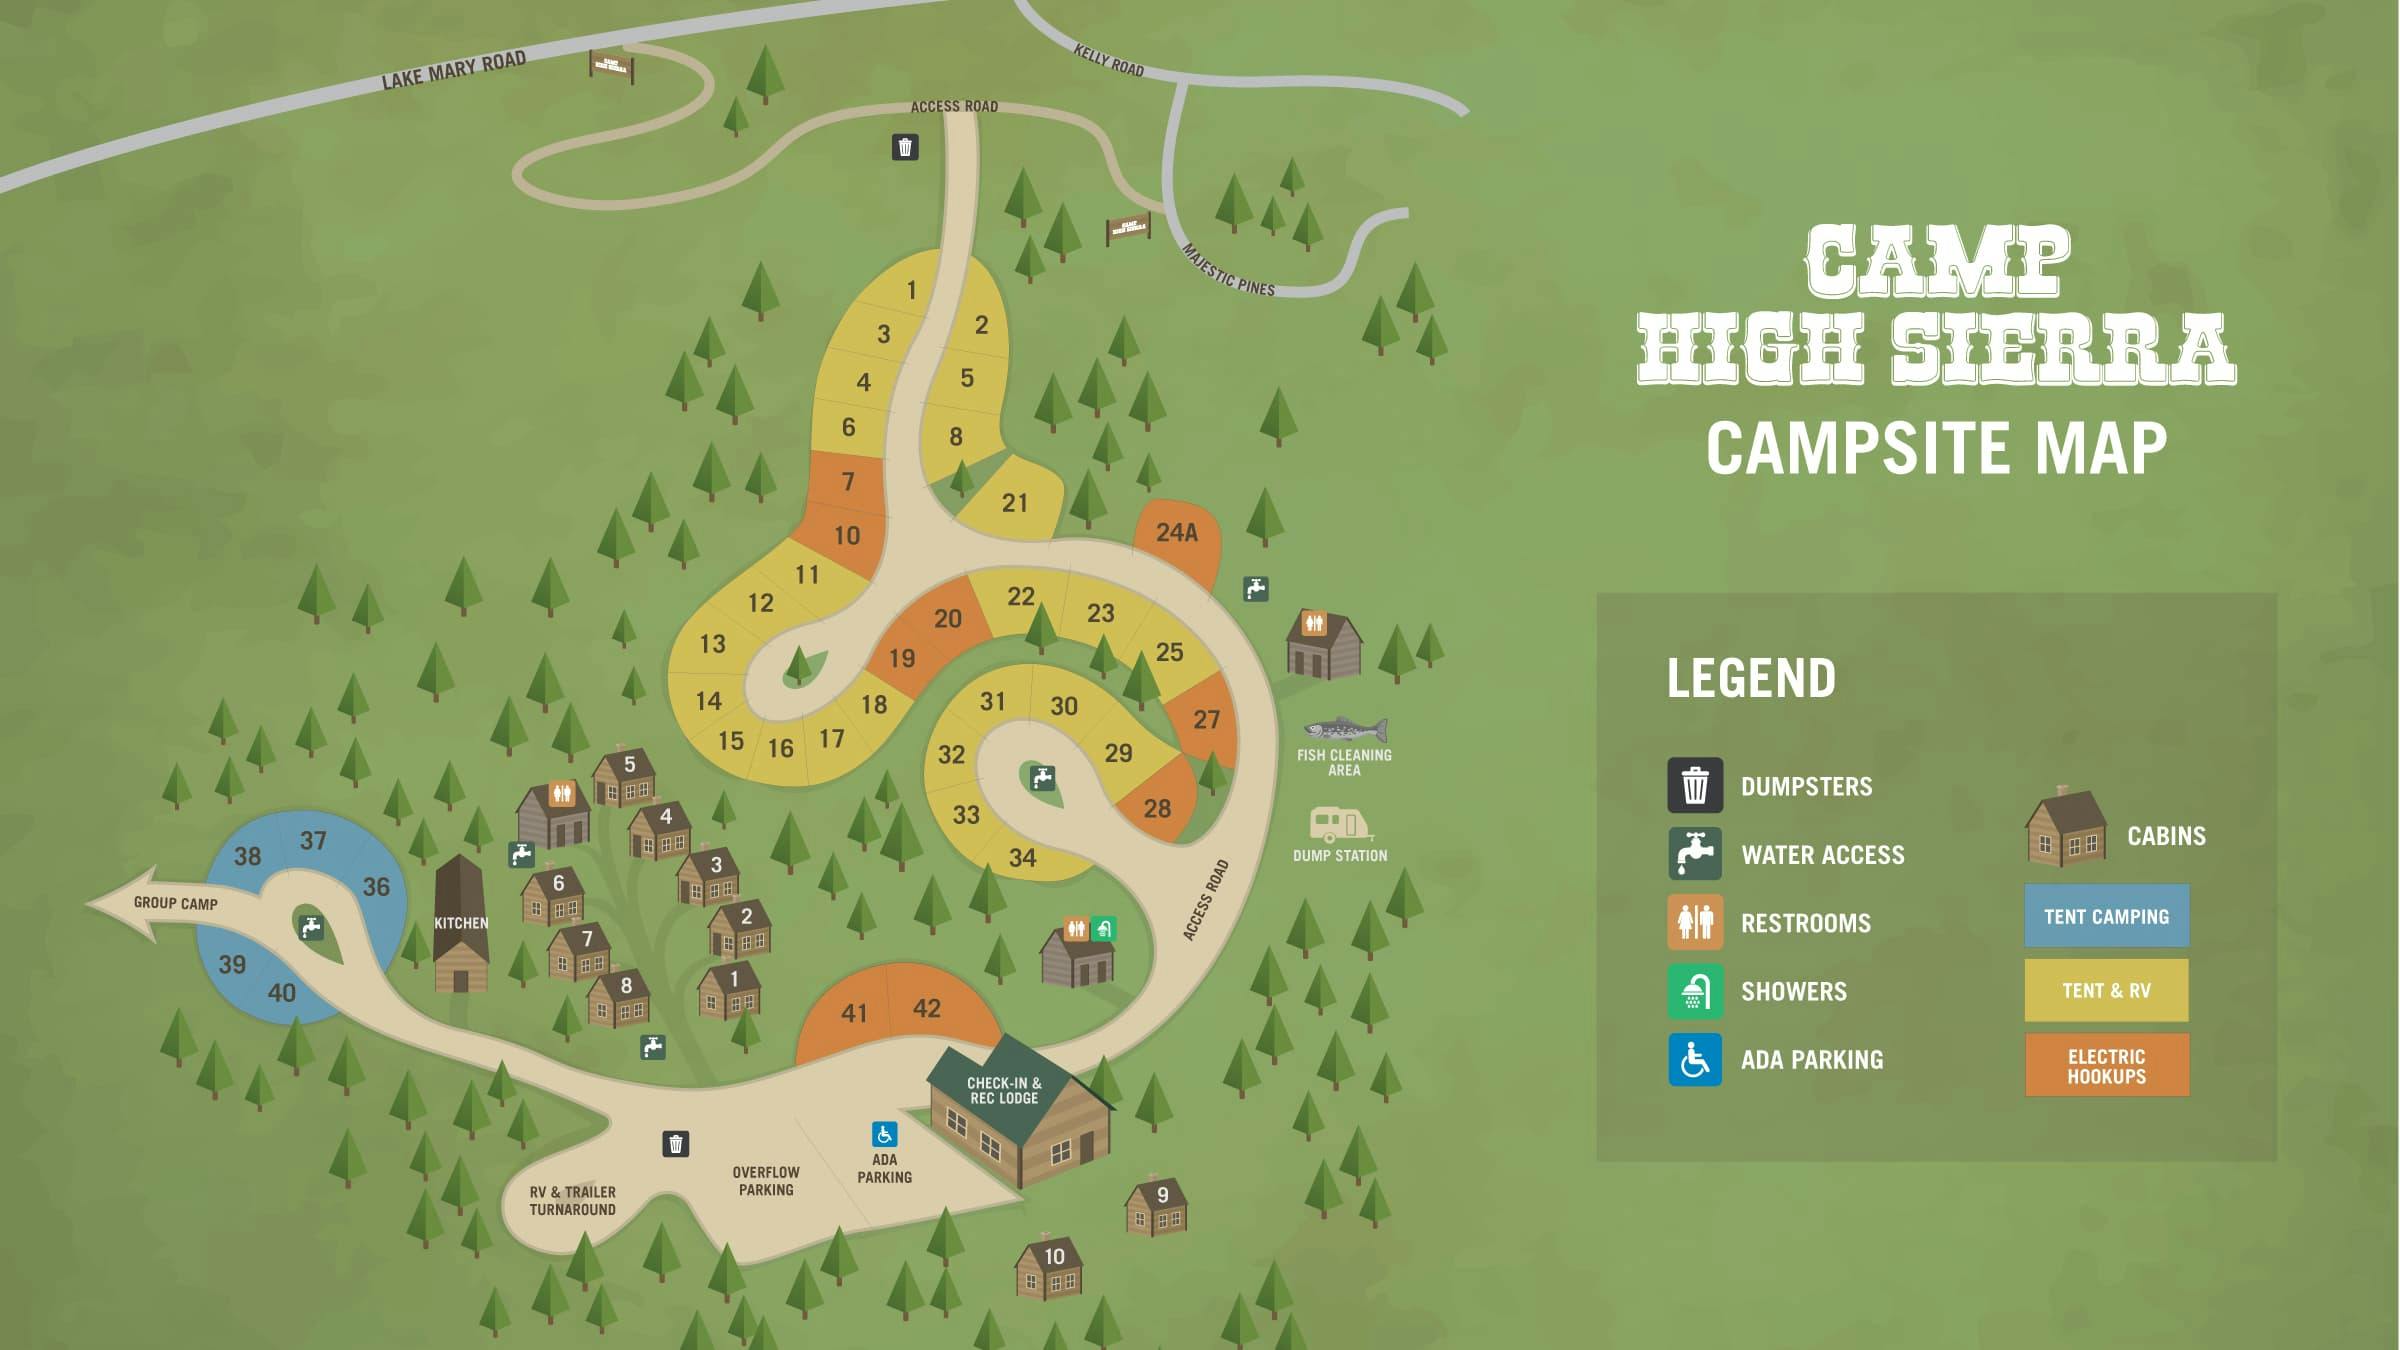 Camp High Sierra Campsite Map